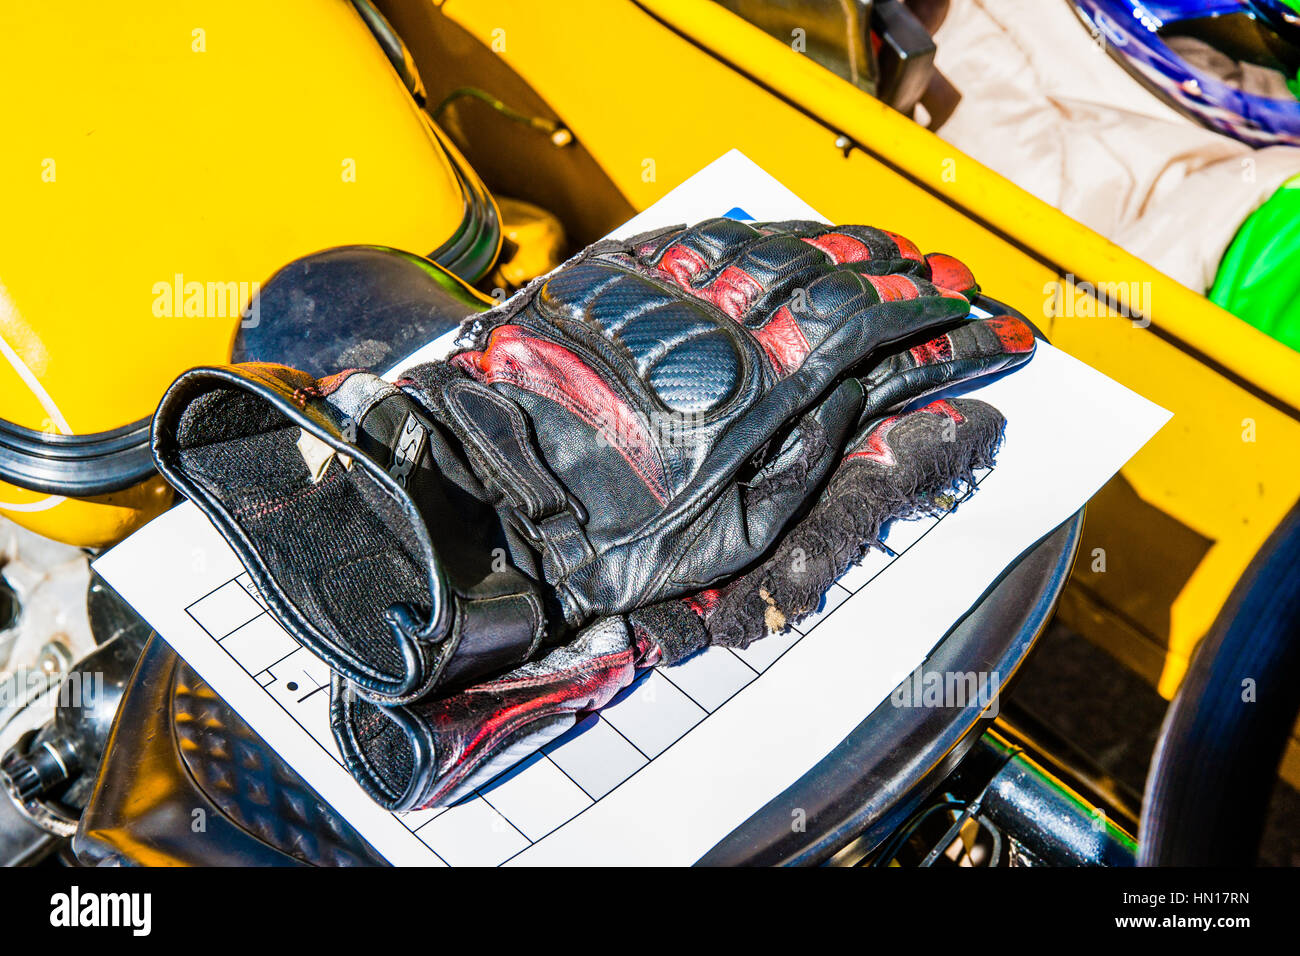 Farbe und Schönheit von Oldtimern. Schwarze Handschuhe eines Bikers auf einem Vordersitz ein Oldtimer Motorrad von gelber Farbe. Stockfoto